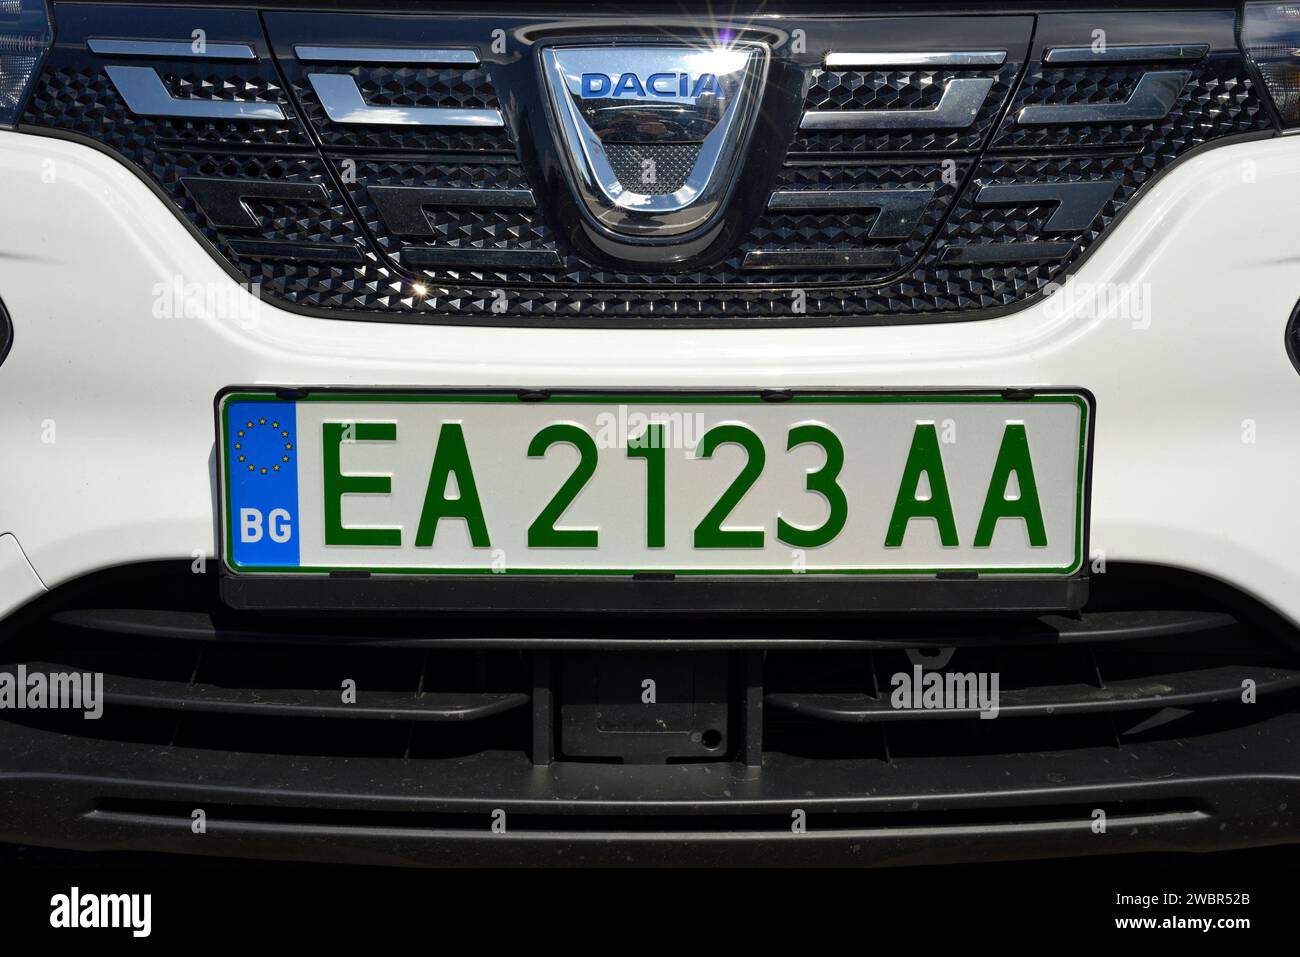 Elektroauto EA bulgarisches Kennzeichen oder Kennzeichen des Fahrzeugs mit dunkelgrüner Schriftfarbe auf Dacia Car, Bulgarien, Europa, EU Stockfoto